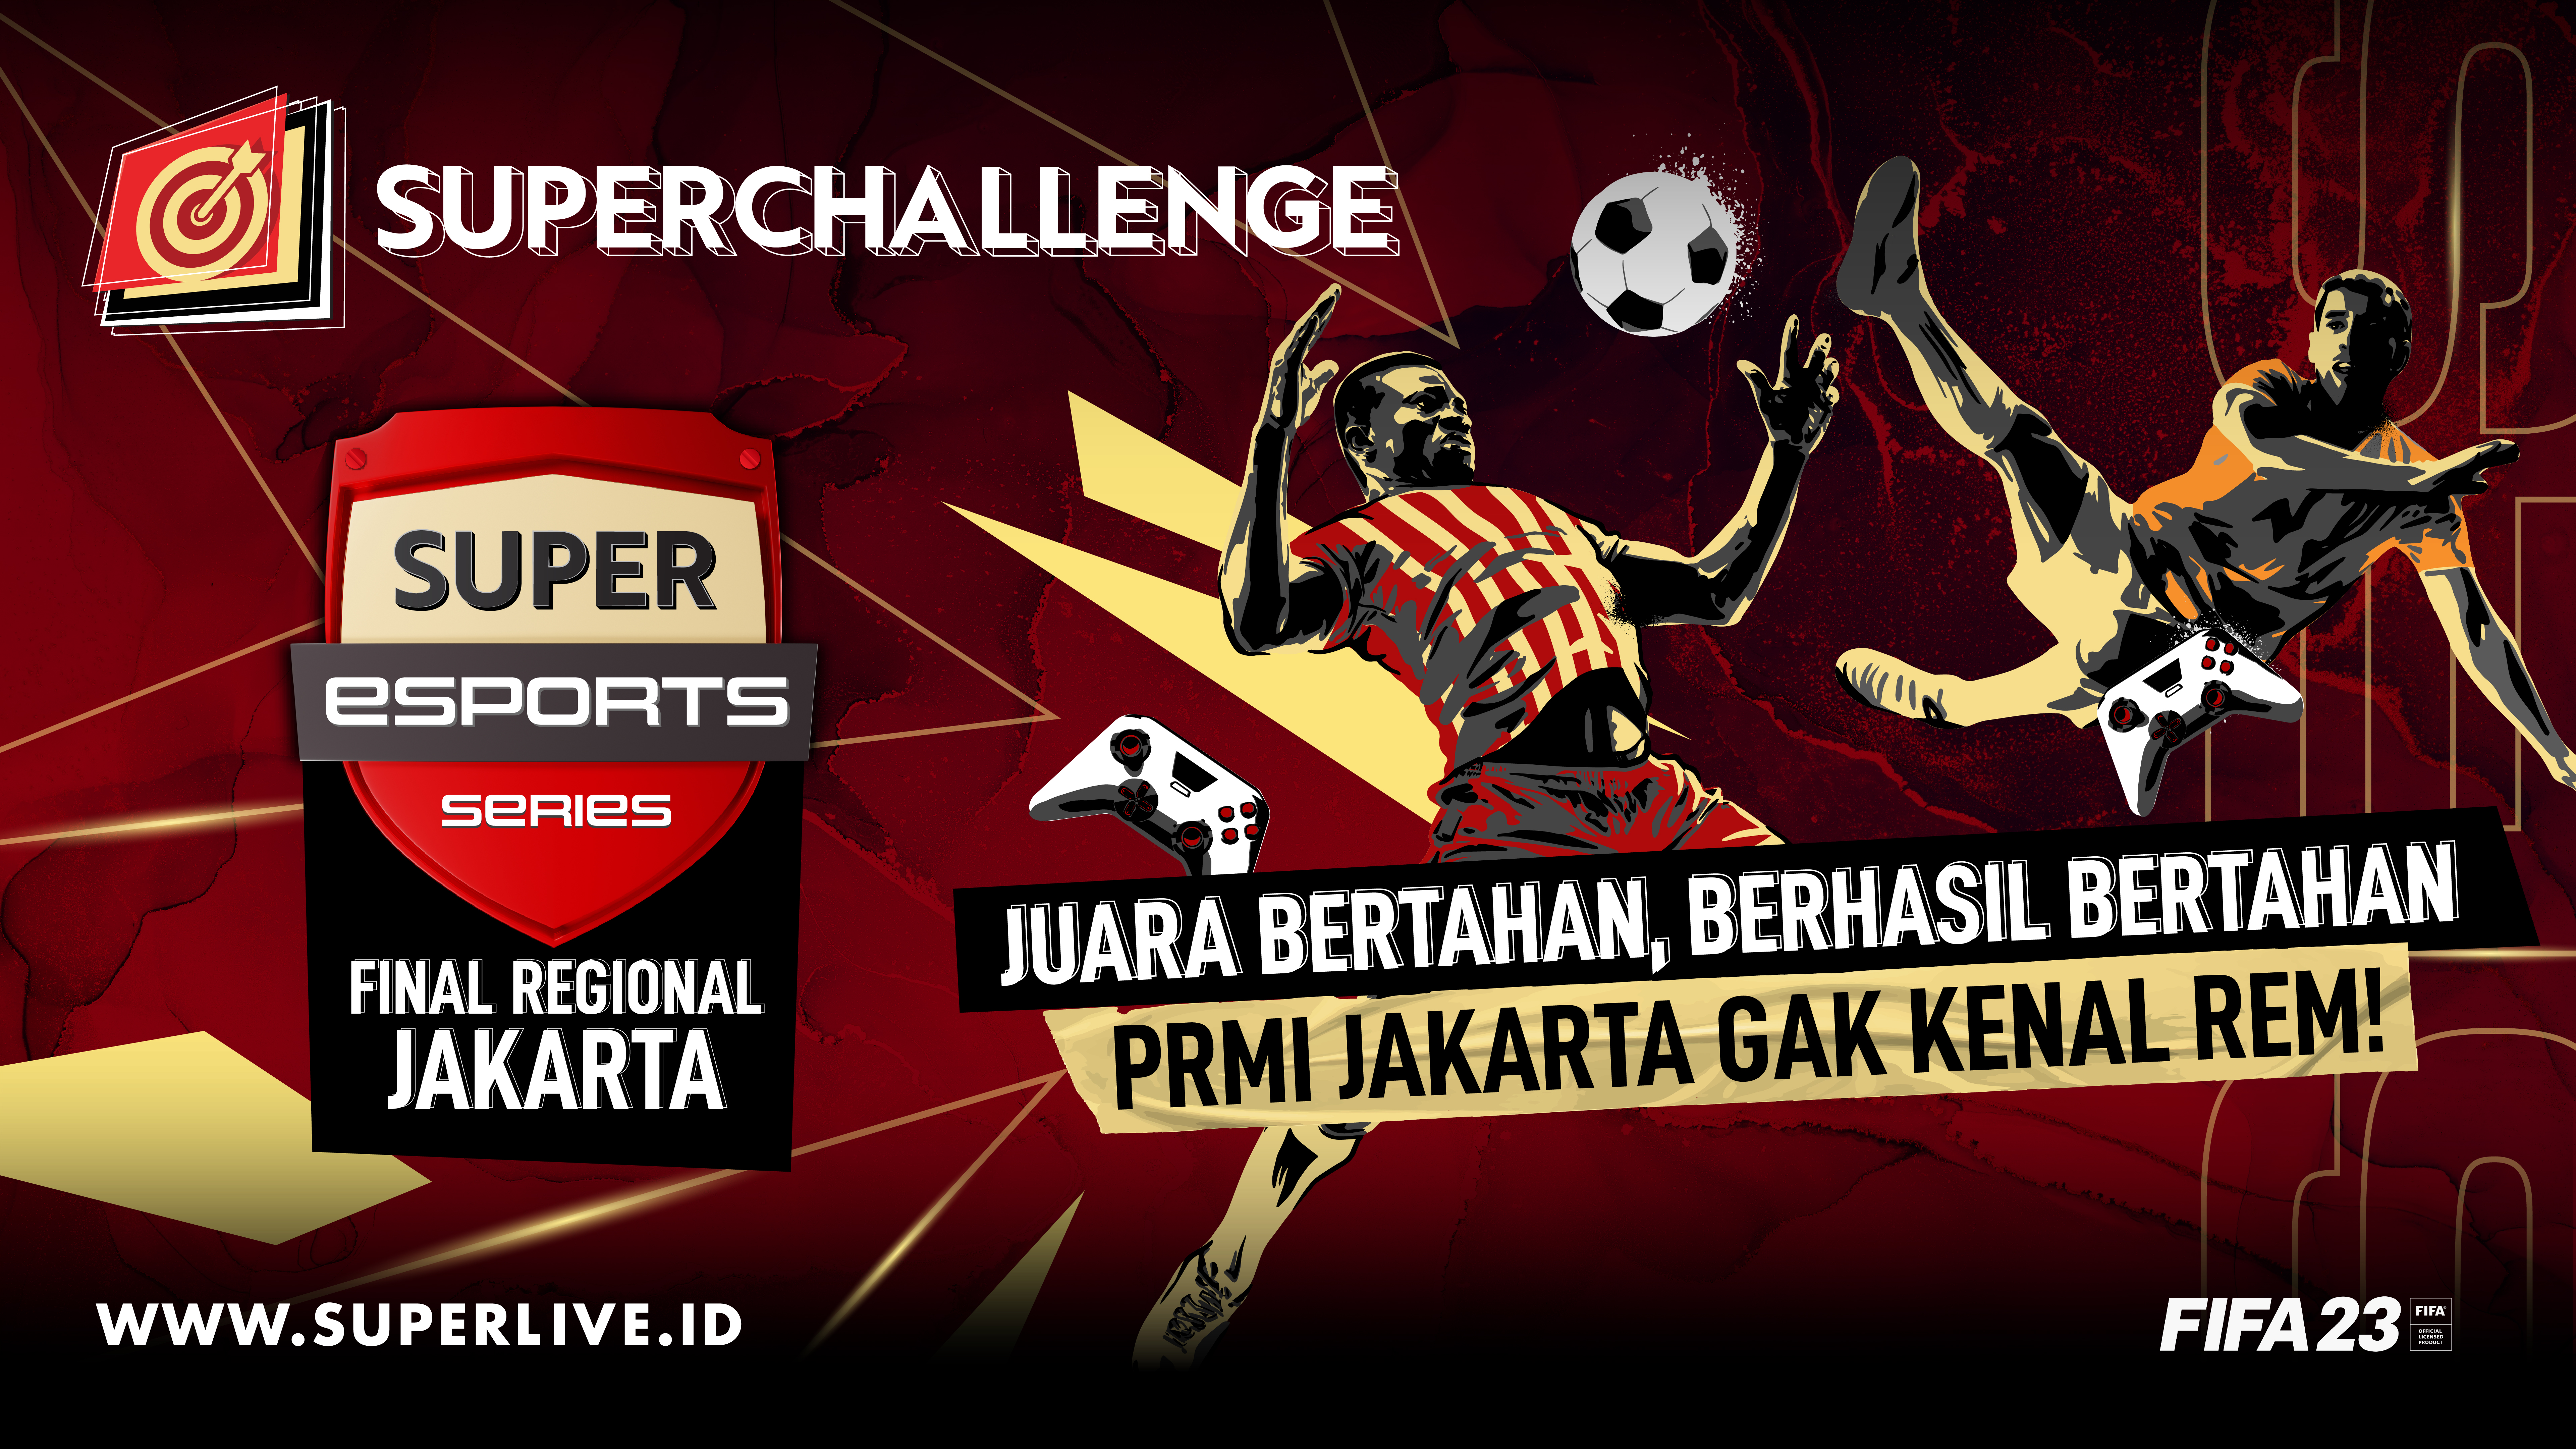 Si Juara Bertahan, Berhasil Bertahan! PRMI Jakarta Juara Super Esports Series FIFA 2023 Final Regional Jakarta